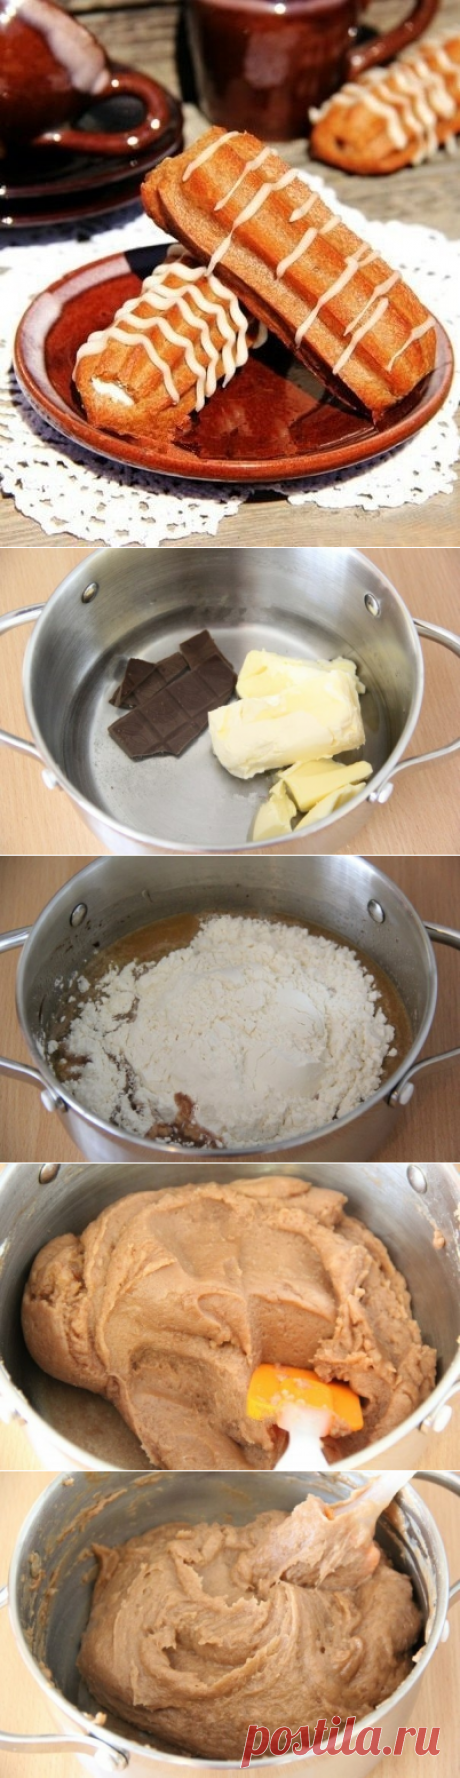 Как приготовить шоколадные эклеры. - рецепт, ингридиенты и фотографии